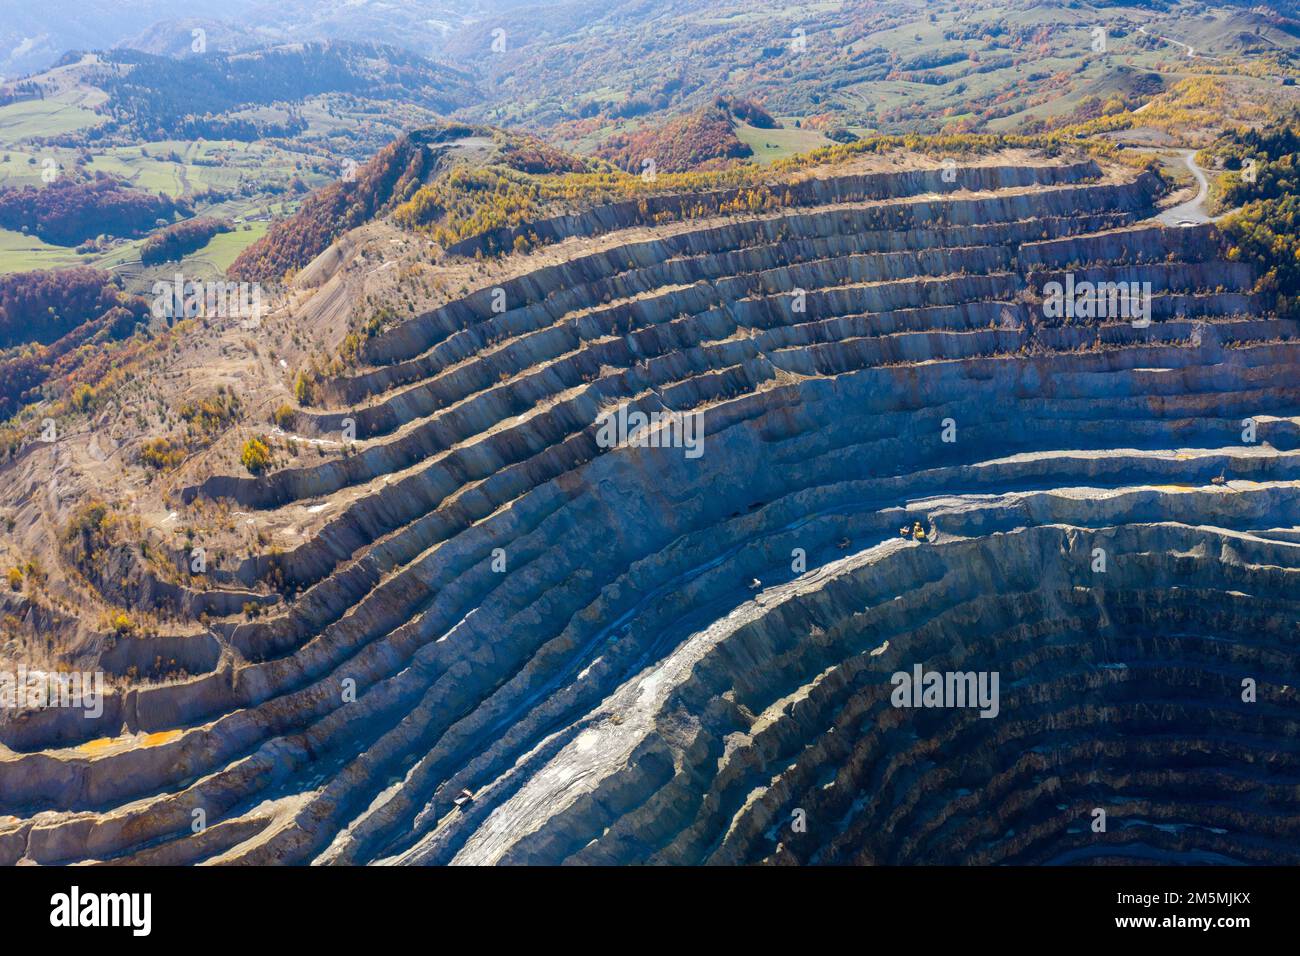 Aerial drone view of Rosia Poieni open pit copper mine, Romania Stock Photo